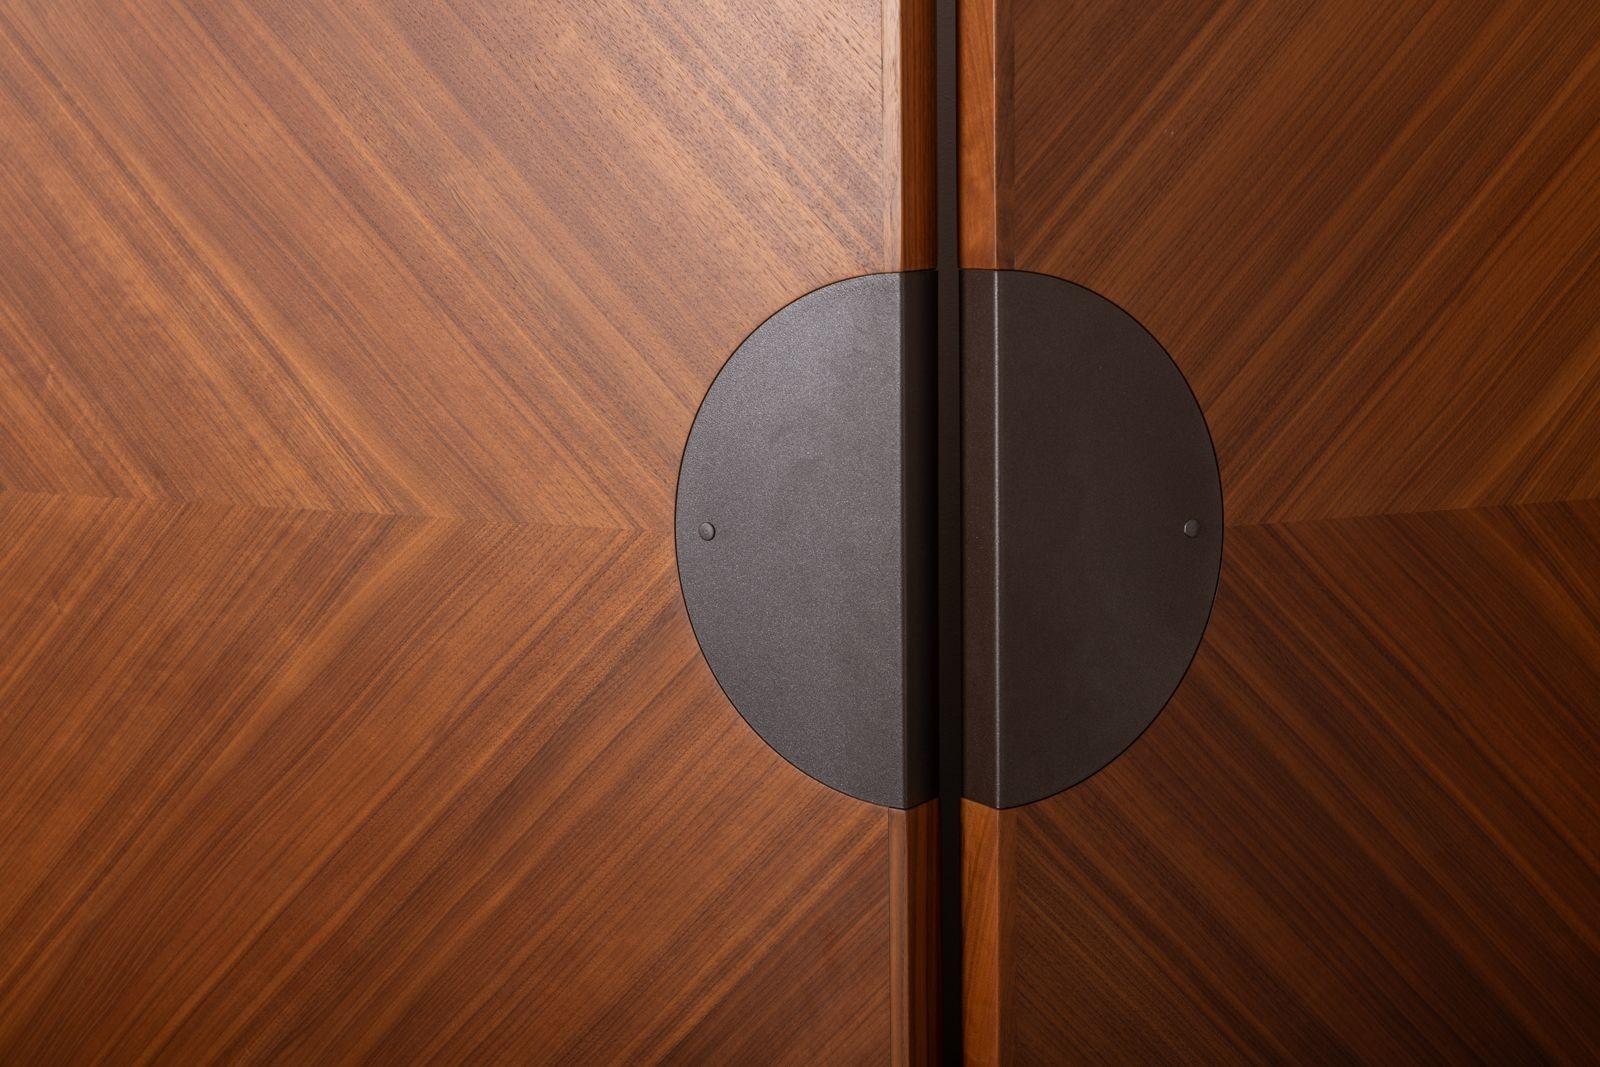 Dieser luxuriöse Raumteiler von Giorgetti besteht aus 4 einzelnen Paneelen mit kreisförmig verlaufendem Furnier aus Nussbaum Canaletto, das einen Sunburst-Effekt erzeugt. Die Kugeln sind von einem eingelassenen Spiegel umgeben und mit bronzefarbenen